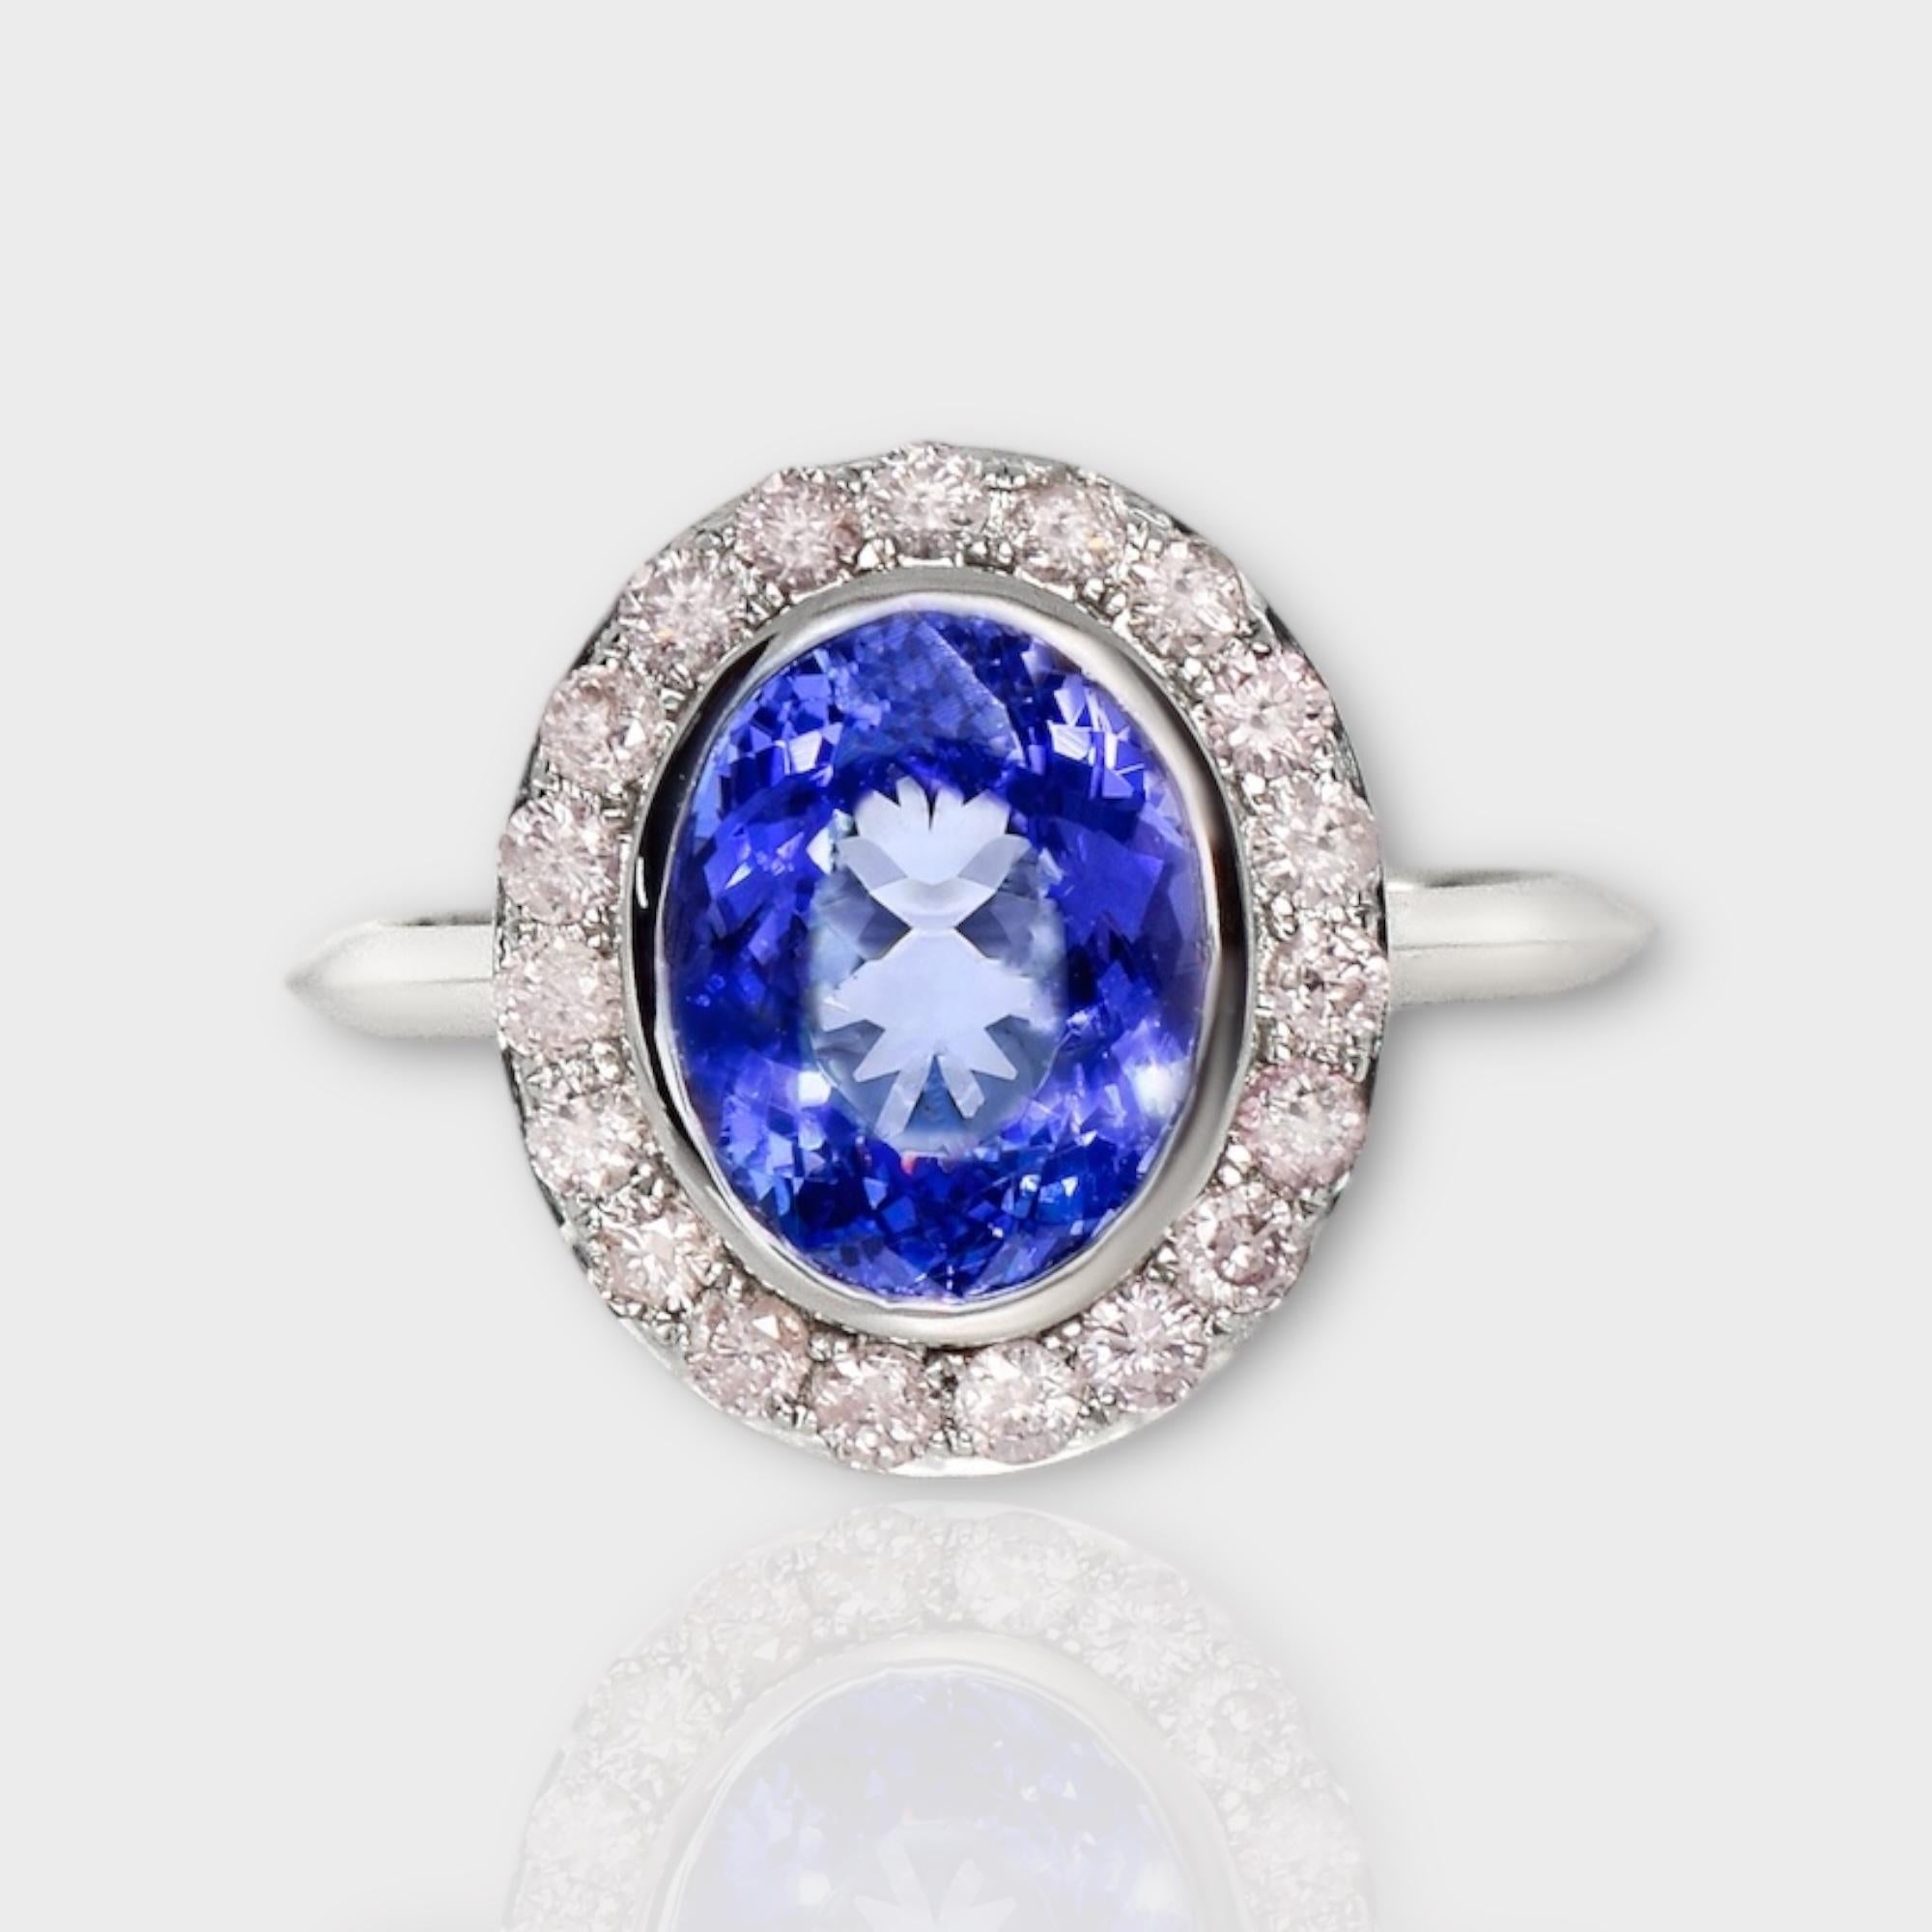 *IGI 14K 2.88 ct Tanzanite&Diamant rose Bague de fiançailles Antique Art Deco Style*
La tanzanite naturelle d'un violet bleuté intense, pesant 2,88 ct, est la pierre centrale entourée de diamants roses naturels pesant 0,44 ct sur le bracelet en or